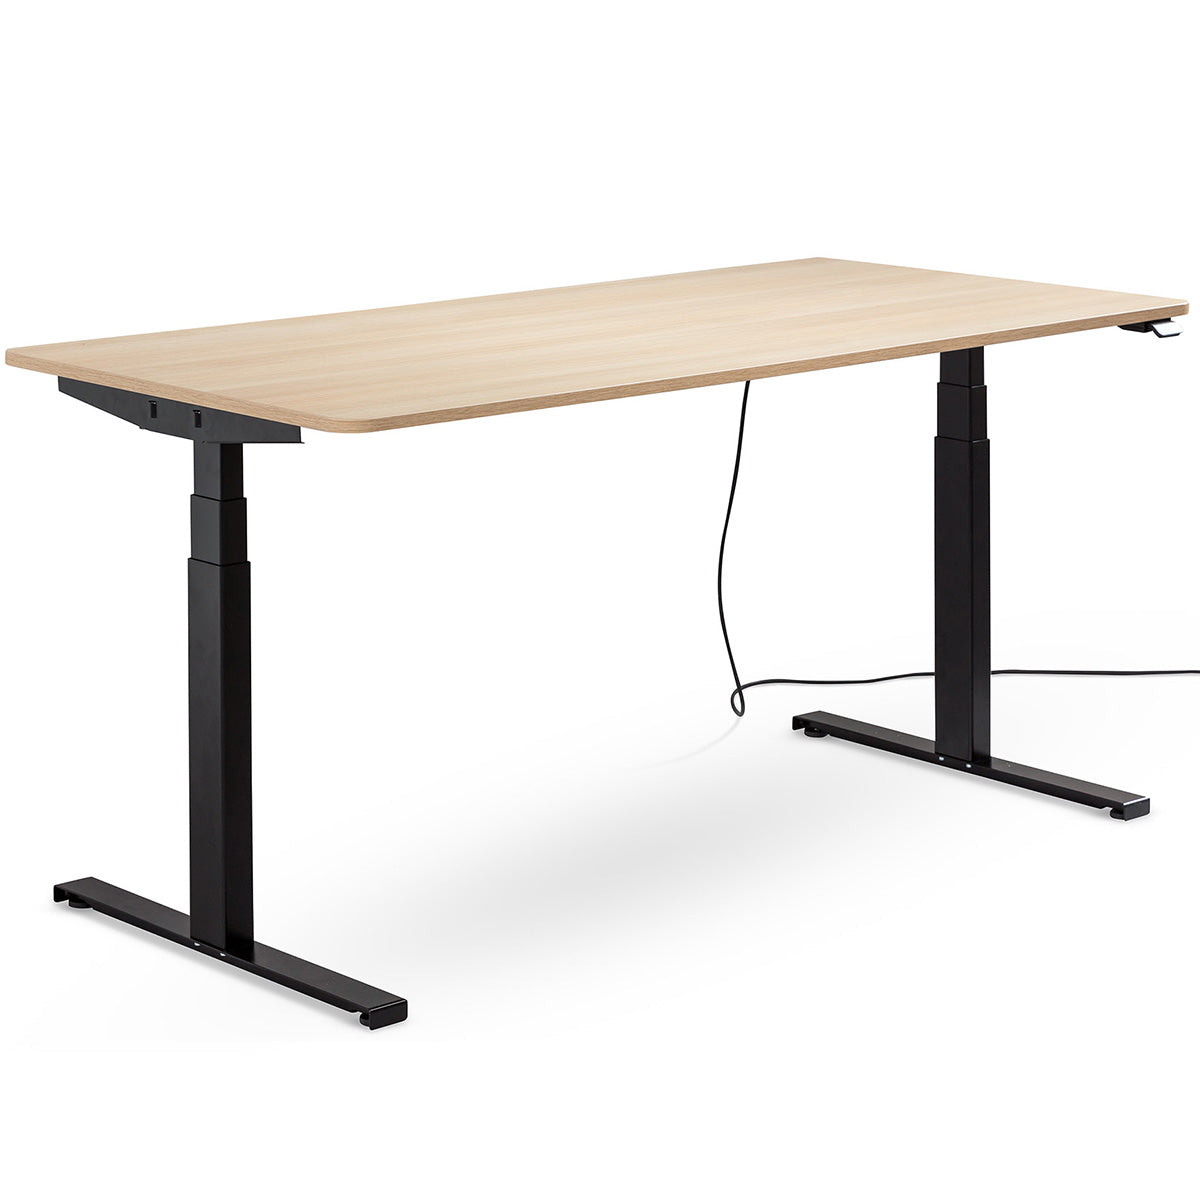 EasyT 180cm - höhenverstellbarer Schreibtisch